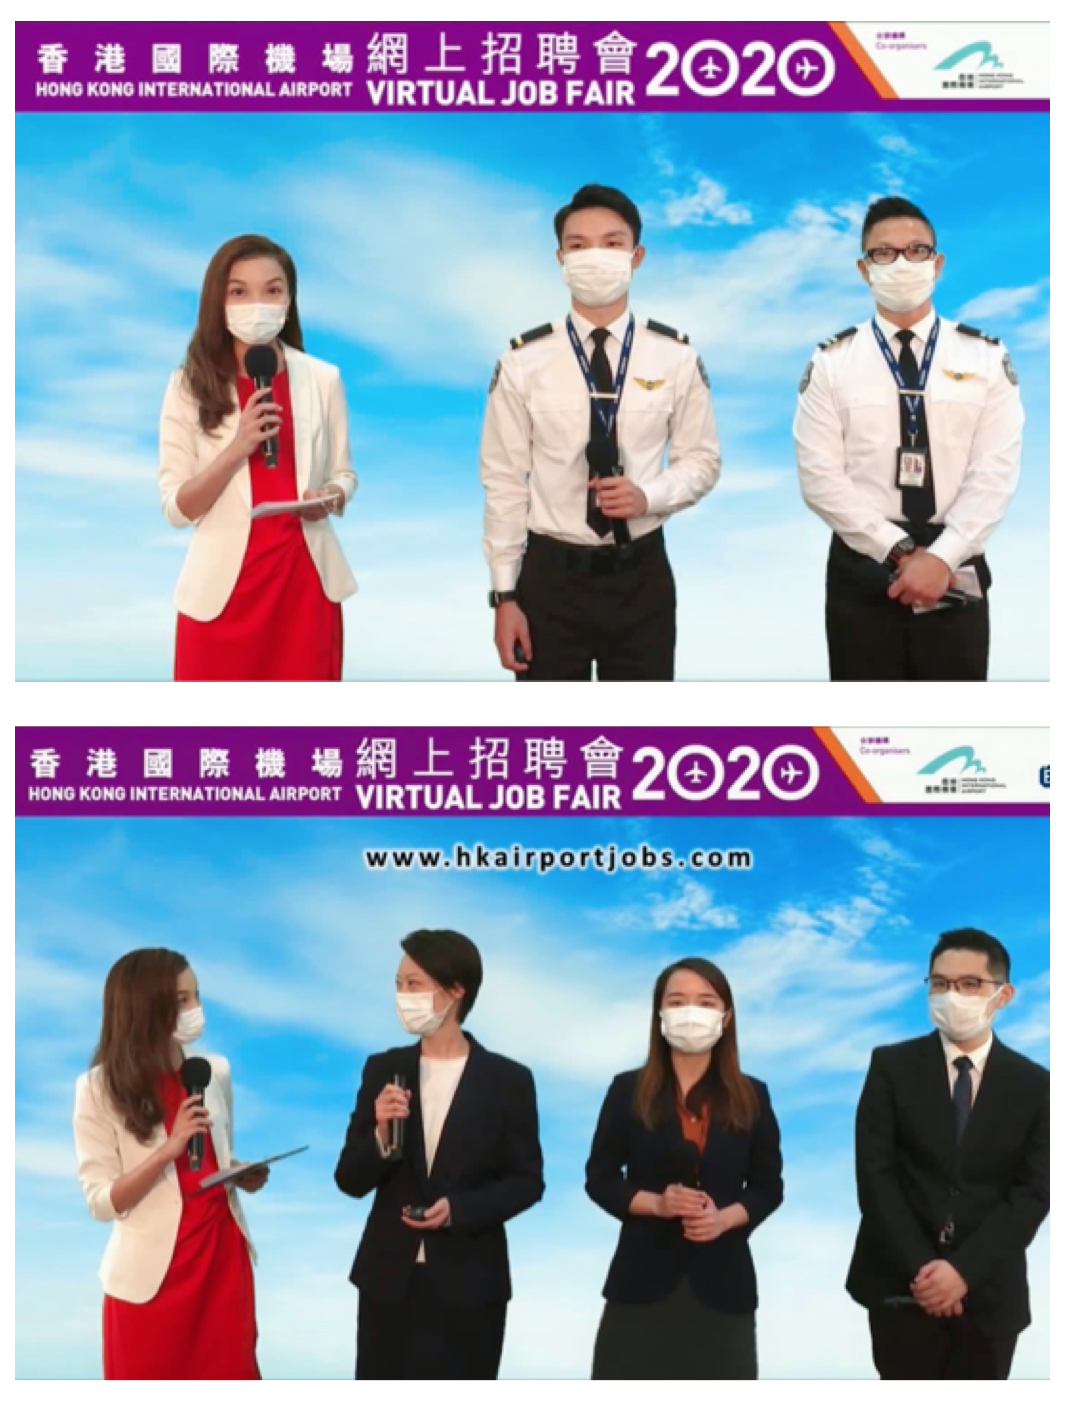 翟秋平司儀工作紀錄: 香港國際機場網上招聘過2020司儀主持